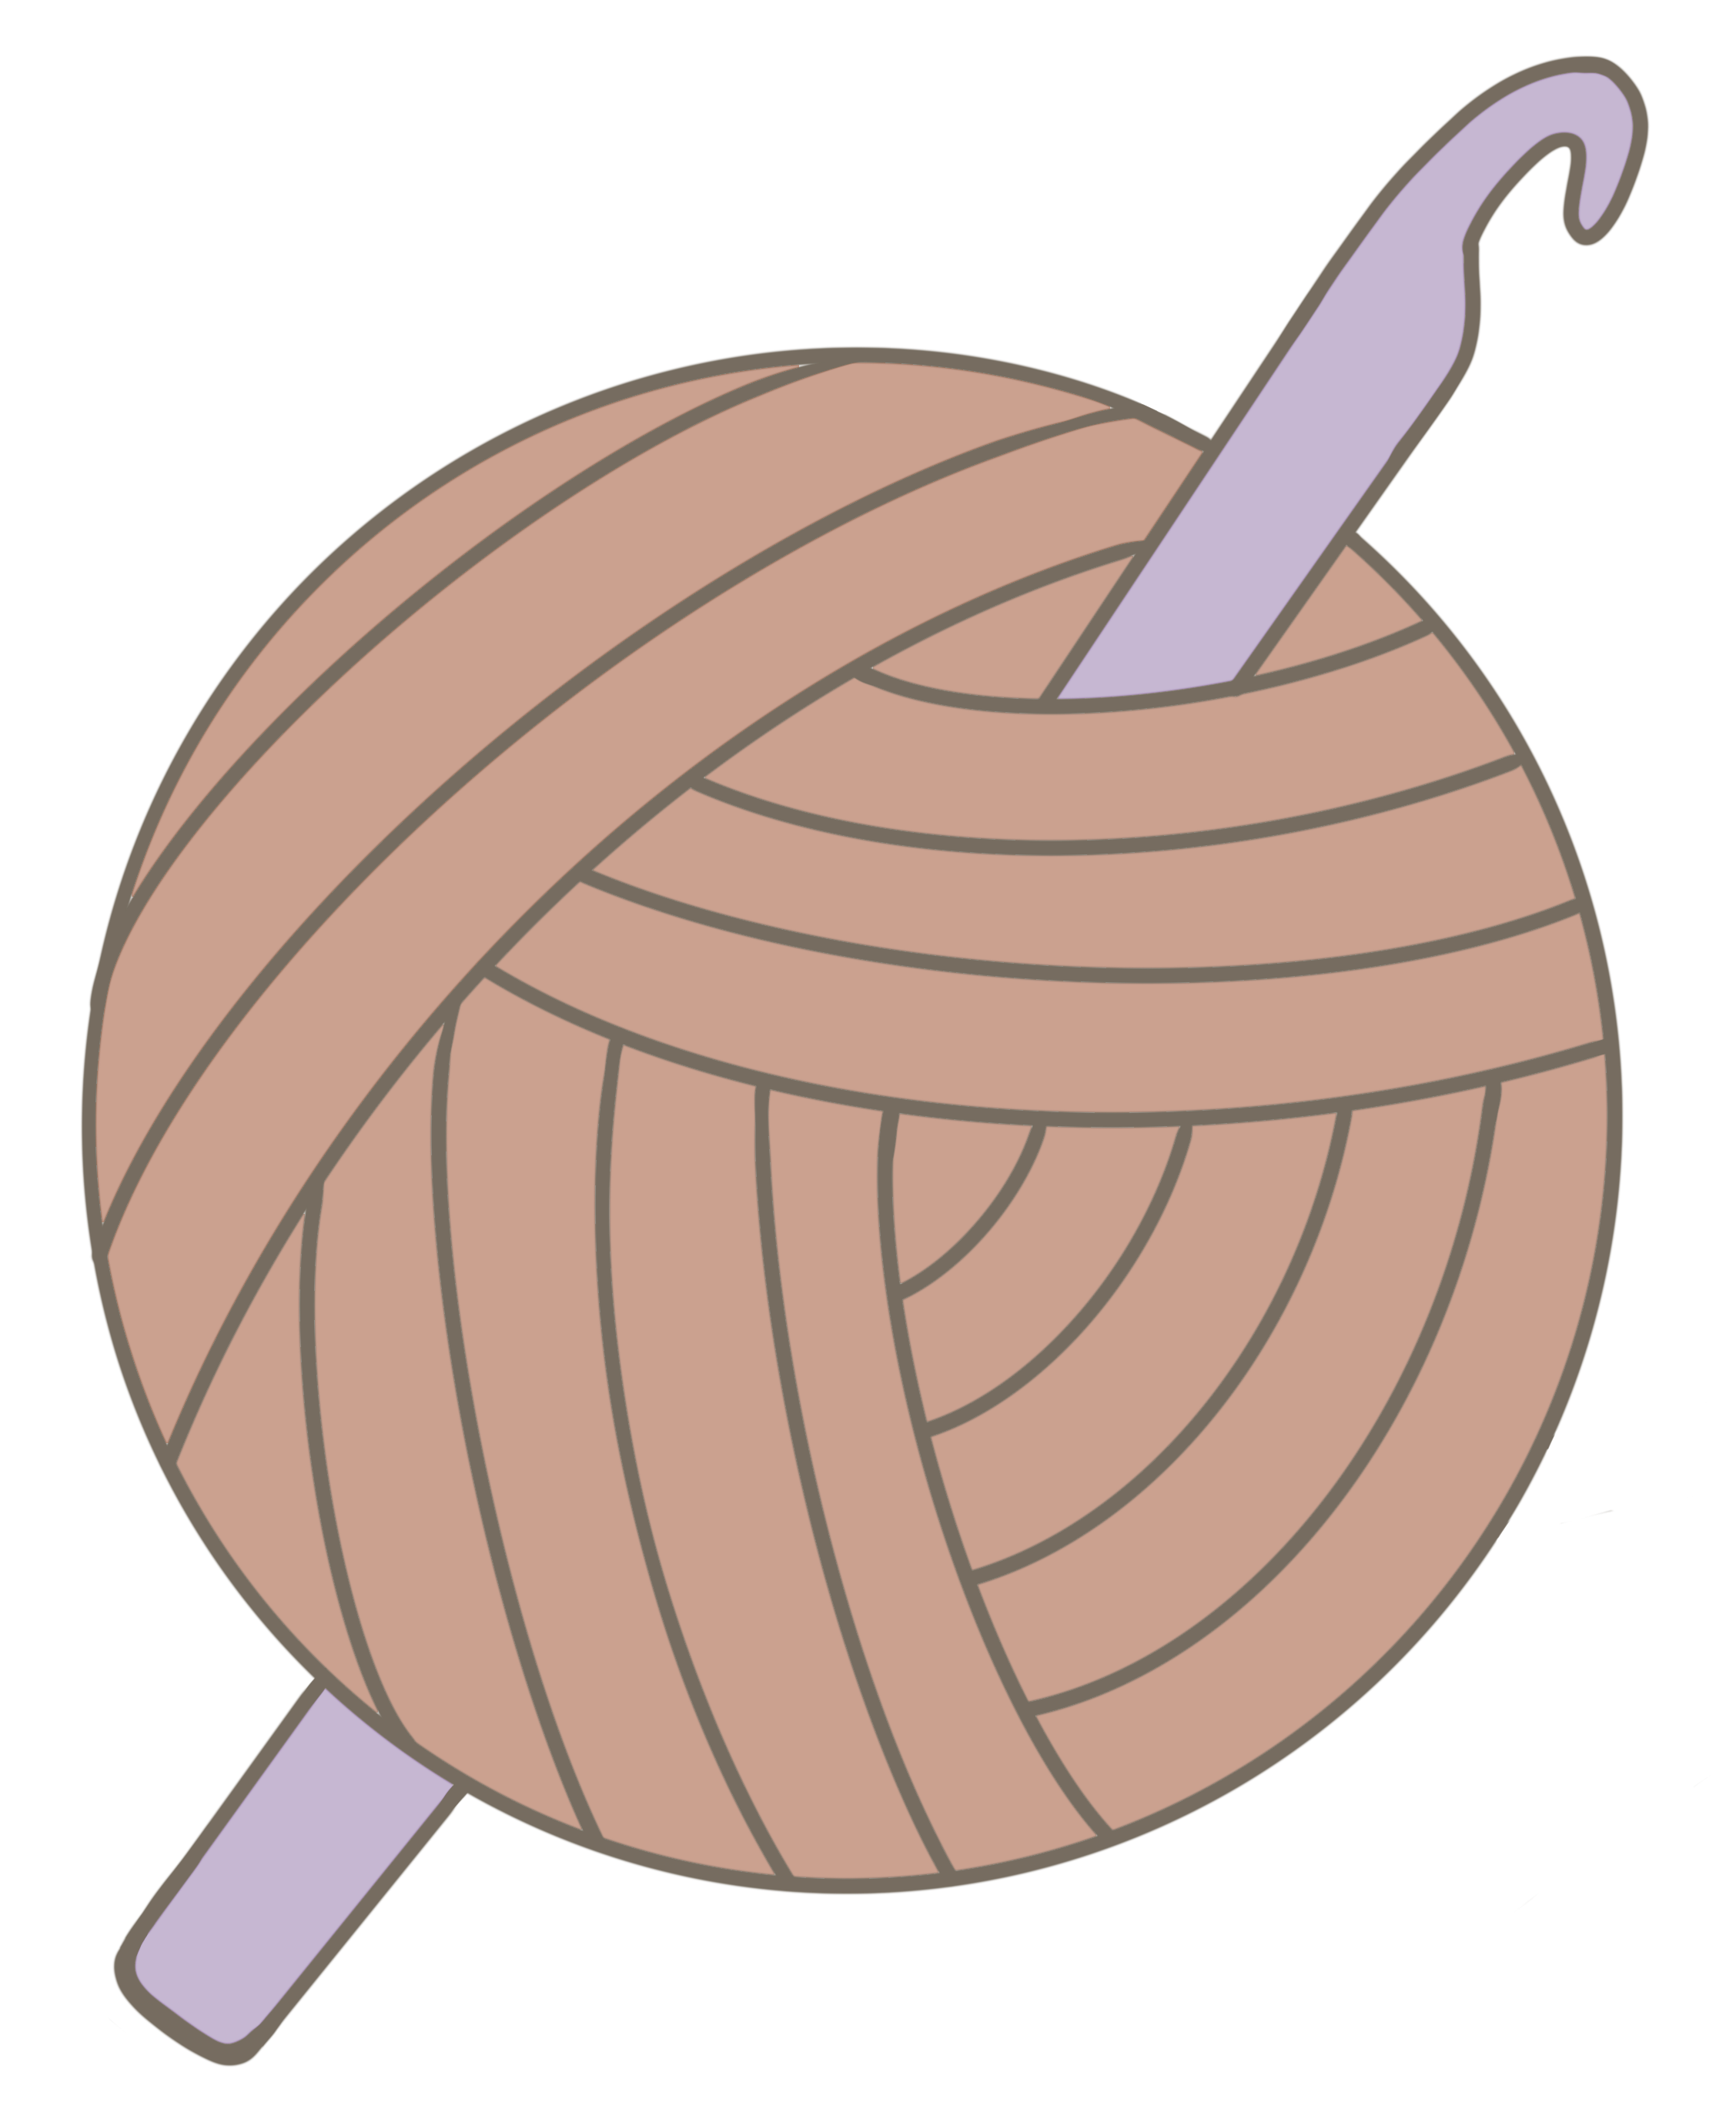 yarn ball and crochet hook illustration